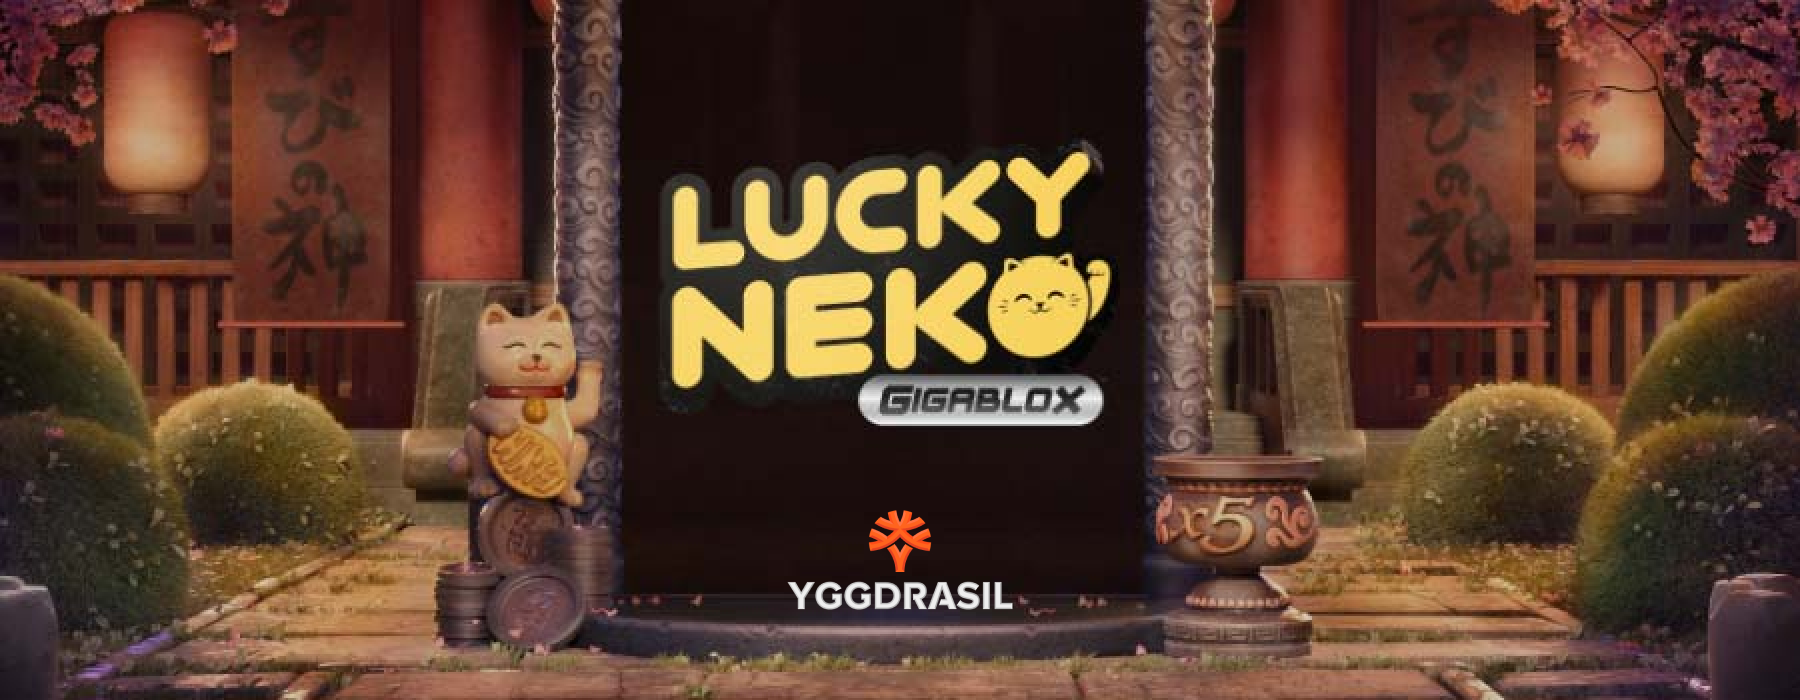 Lucky Neko Gigablox bij Yggdrasil